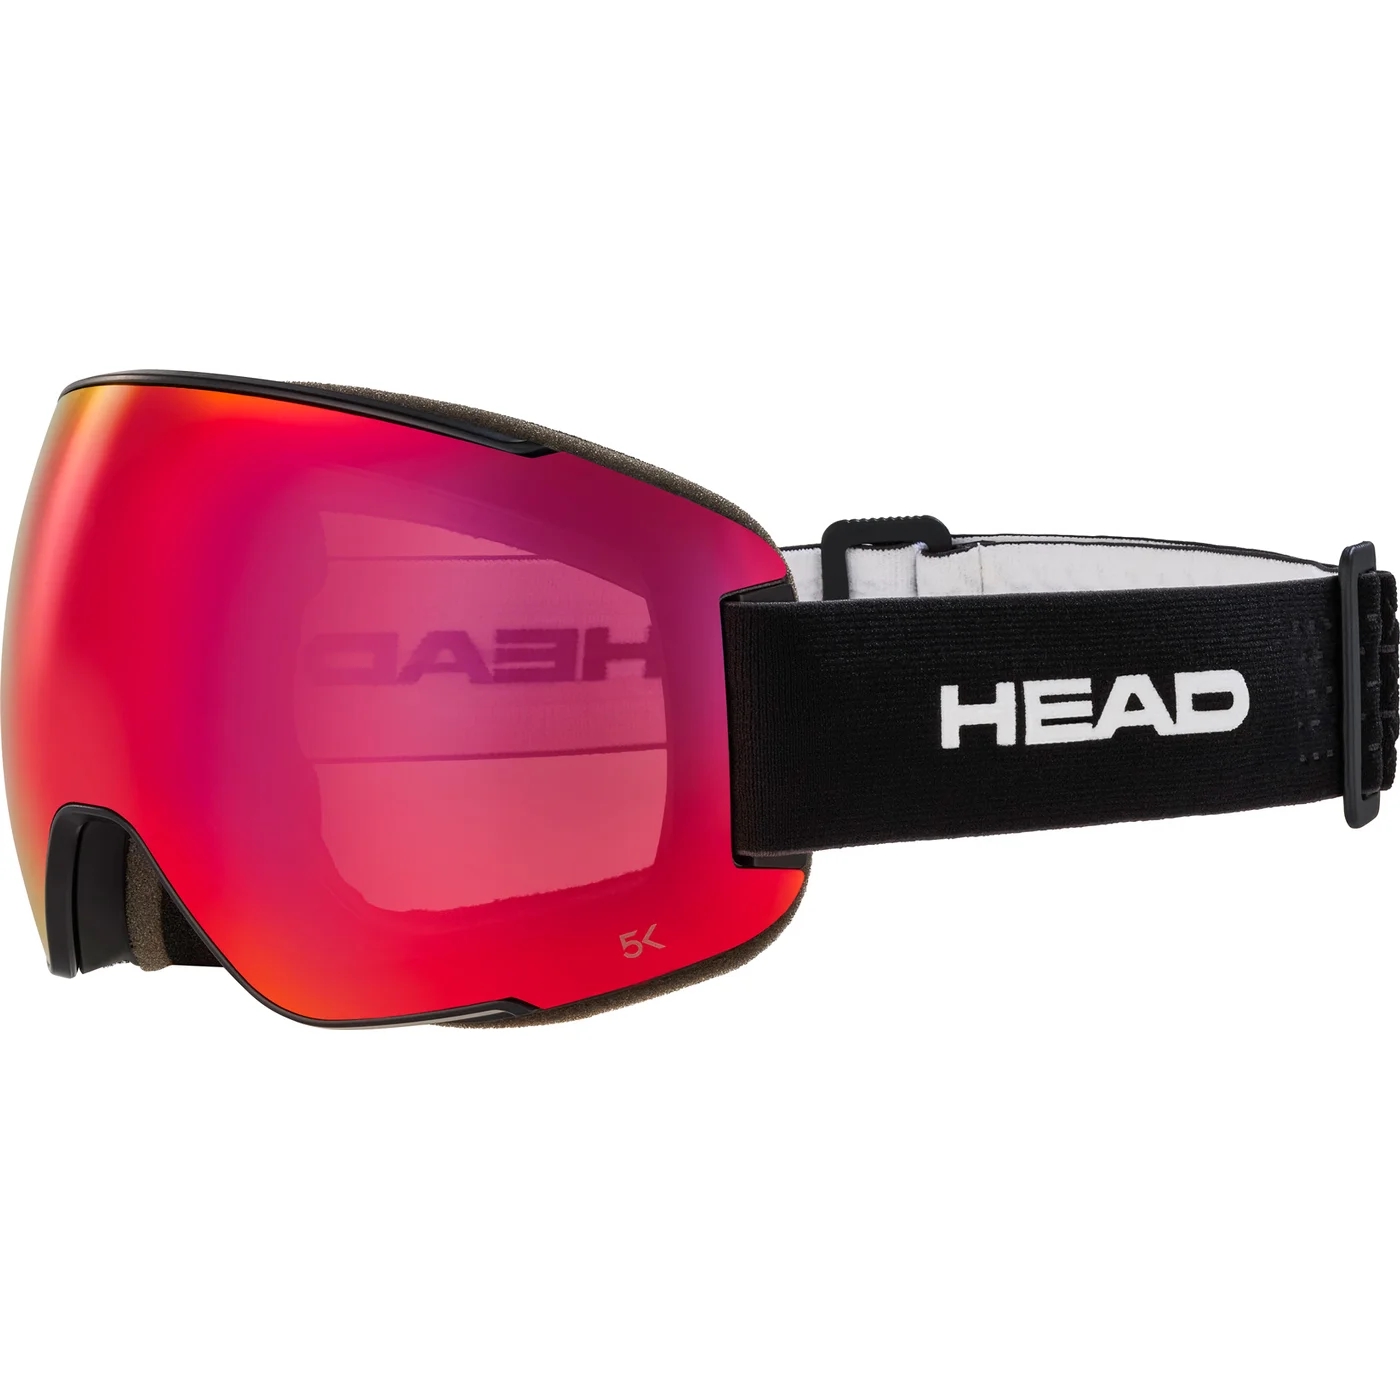 HEAD HERREN BRILLE MAGNIFY 5K RED BLACK - 478WzNfo